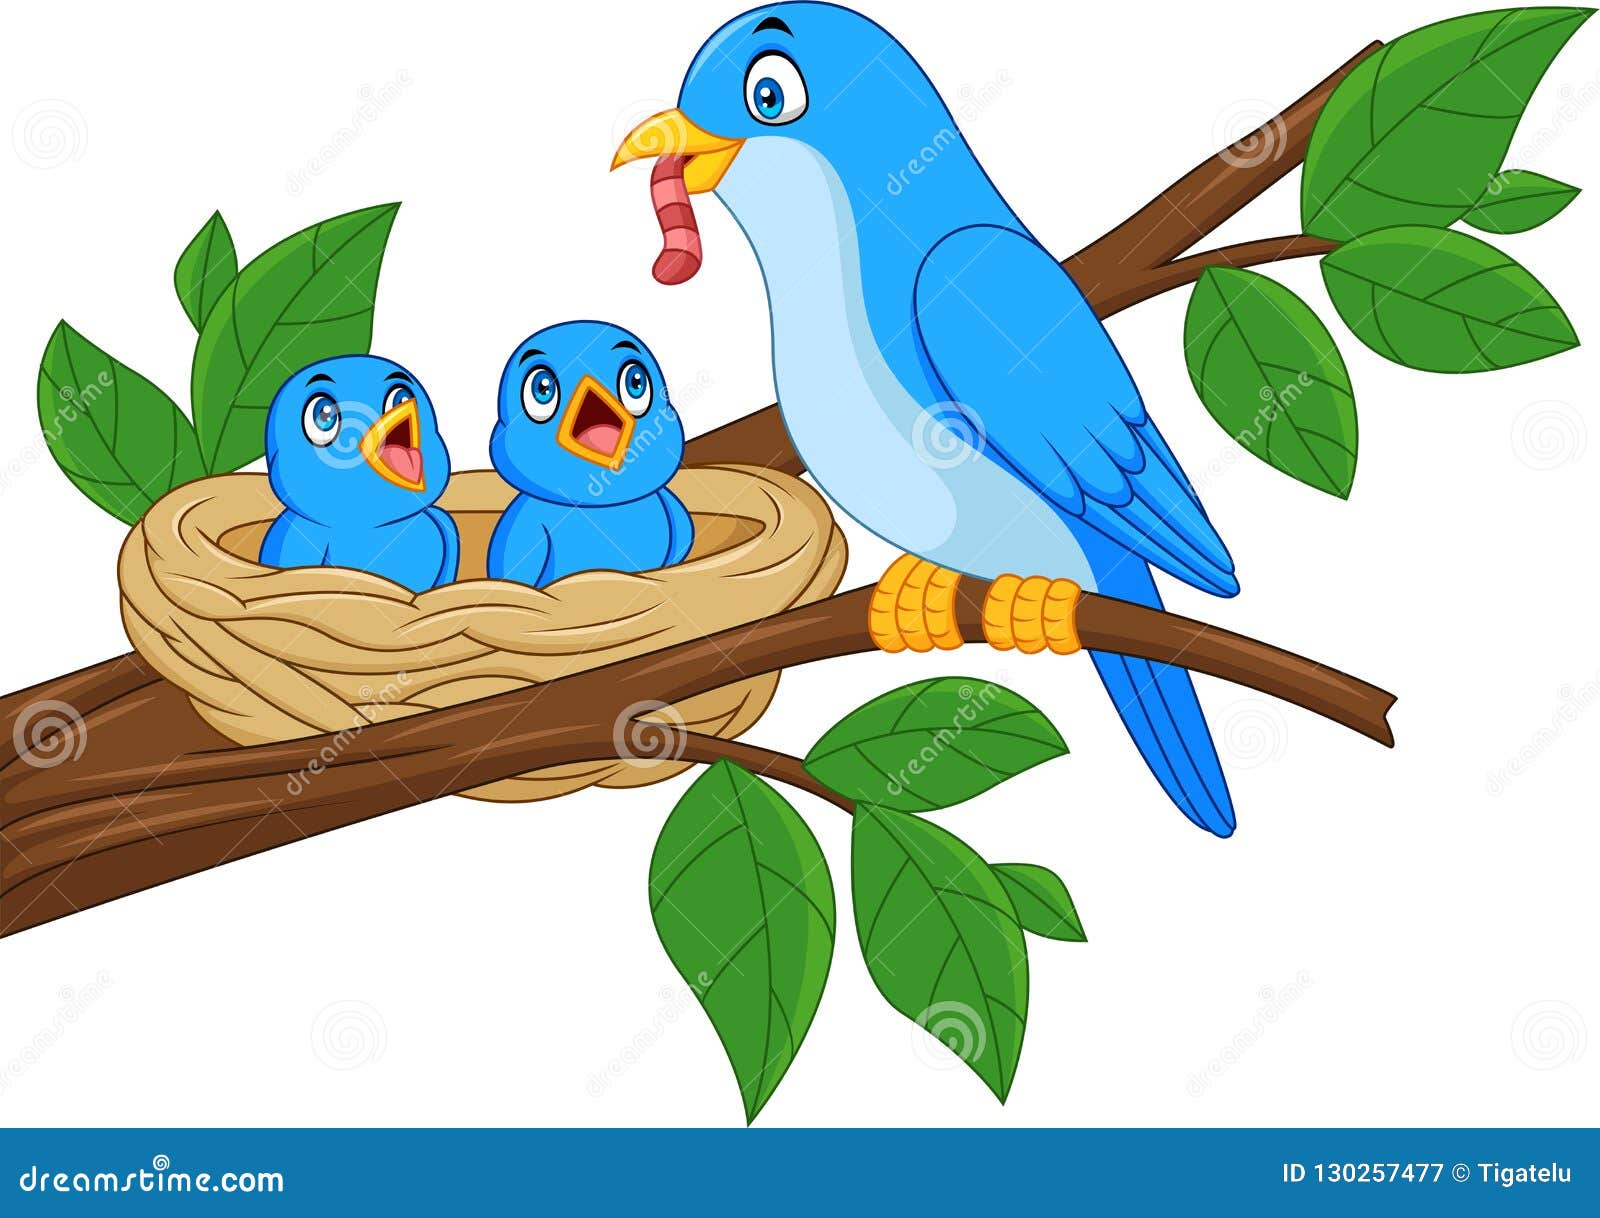 mother blue bird feeding babies in a nest